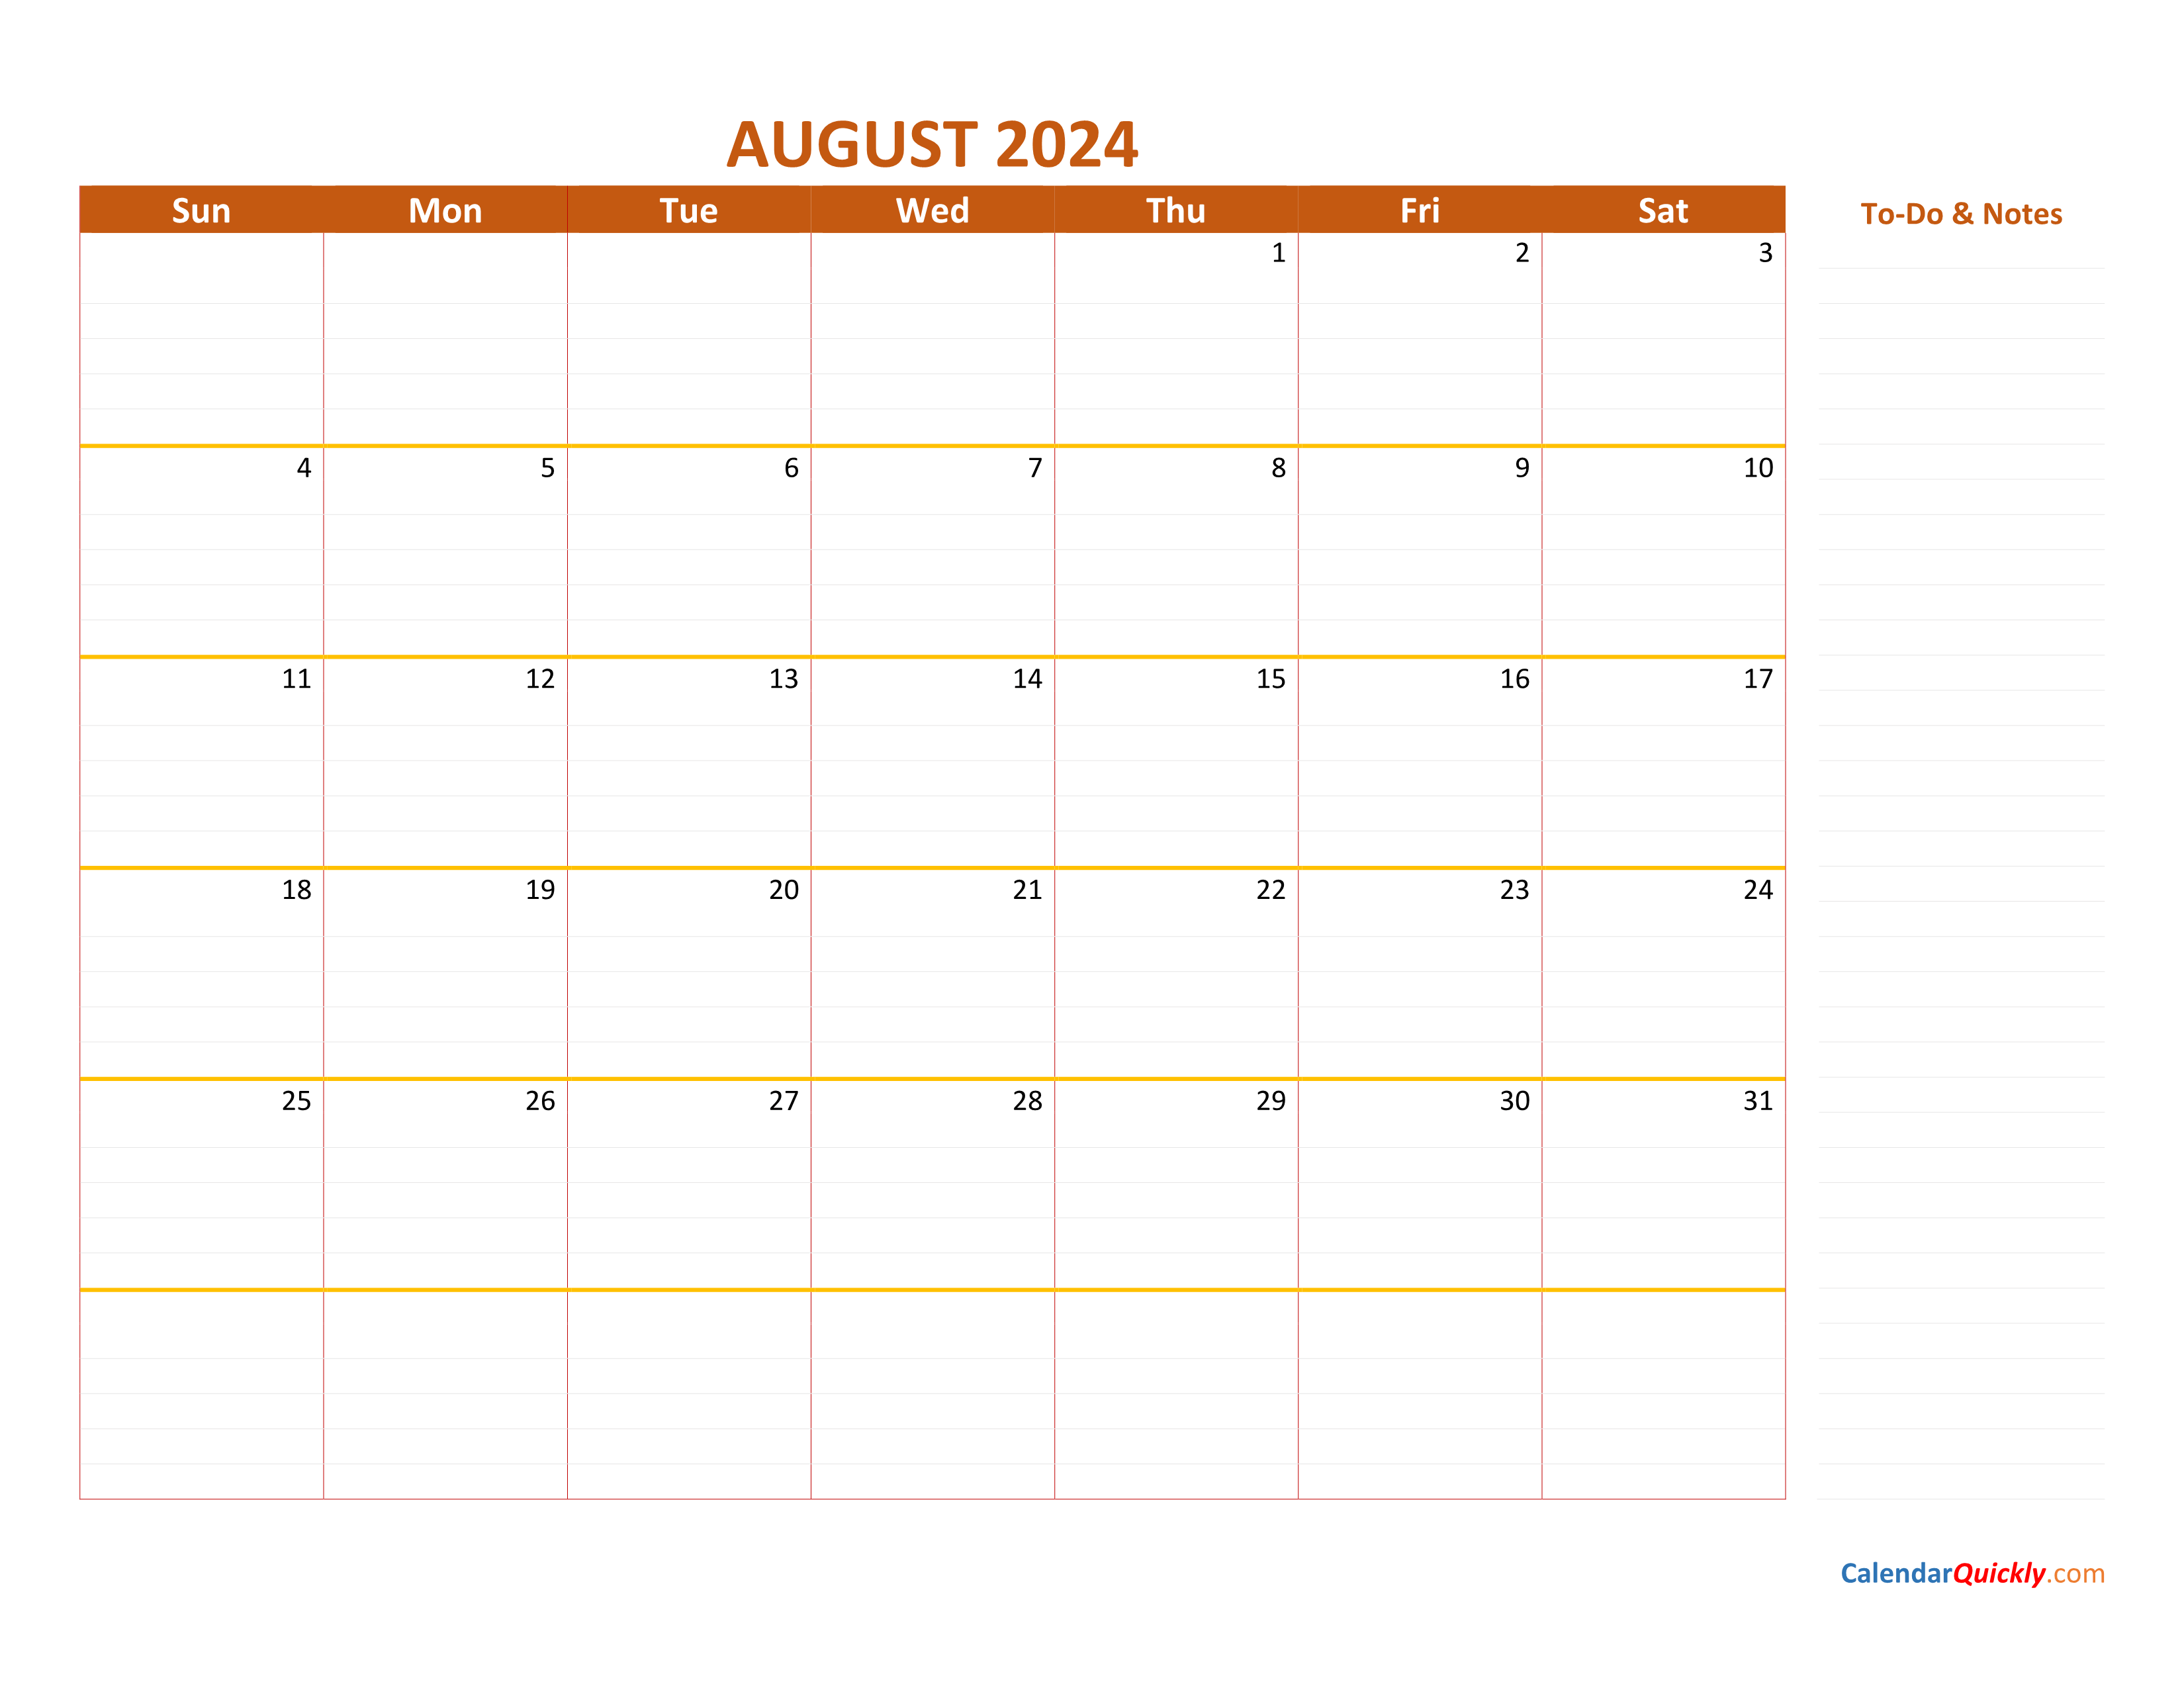 August 2024 Calendar Calendar Quickly